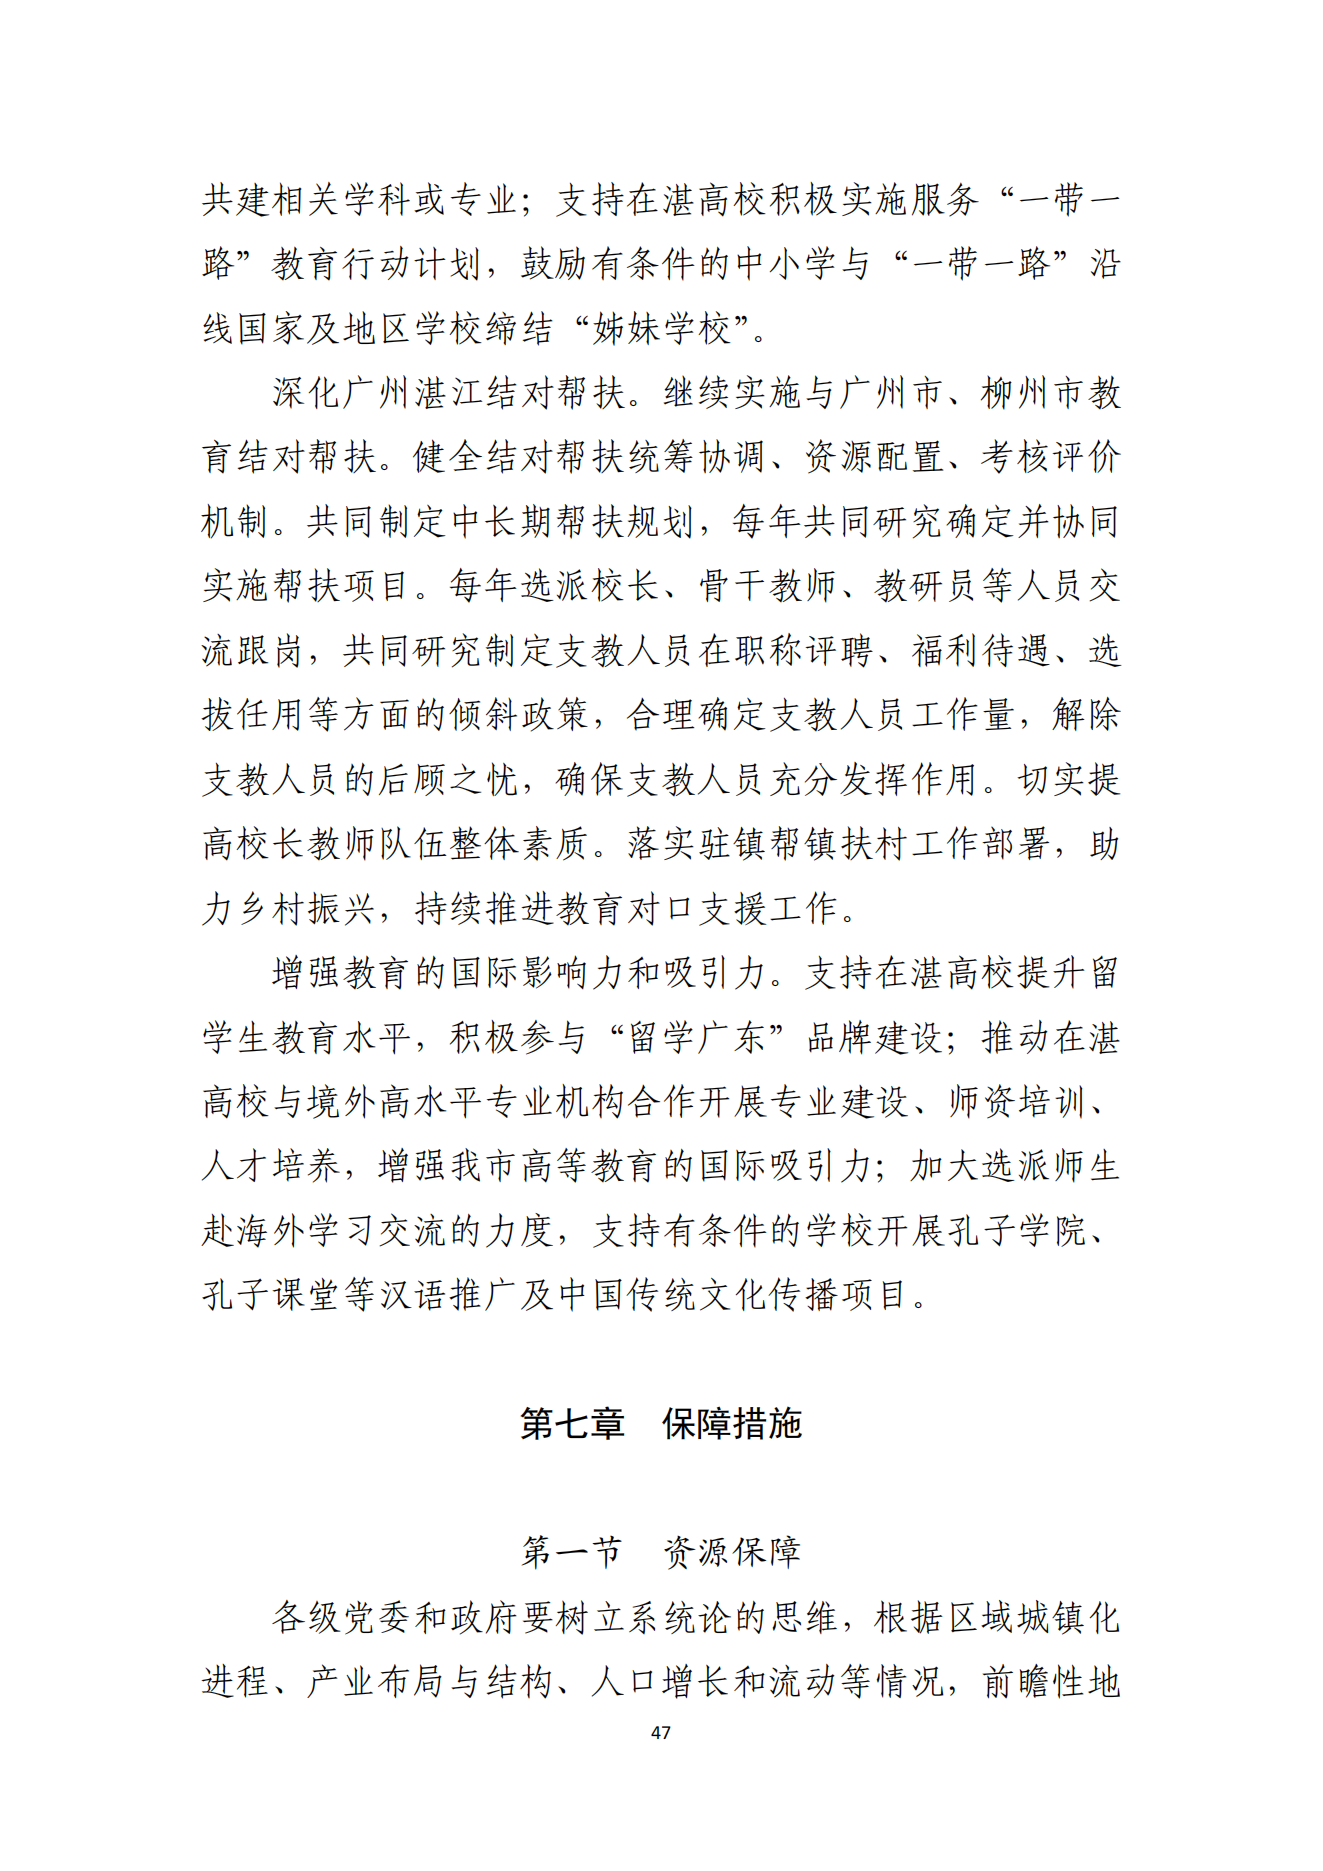 湛江市人民政府办公室关于印发湛江市教育发展“十四五”规划的通知_46.png